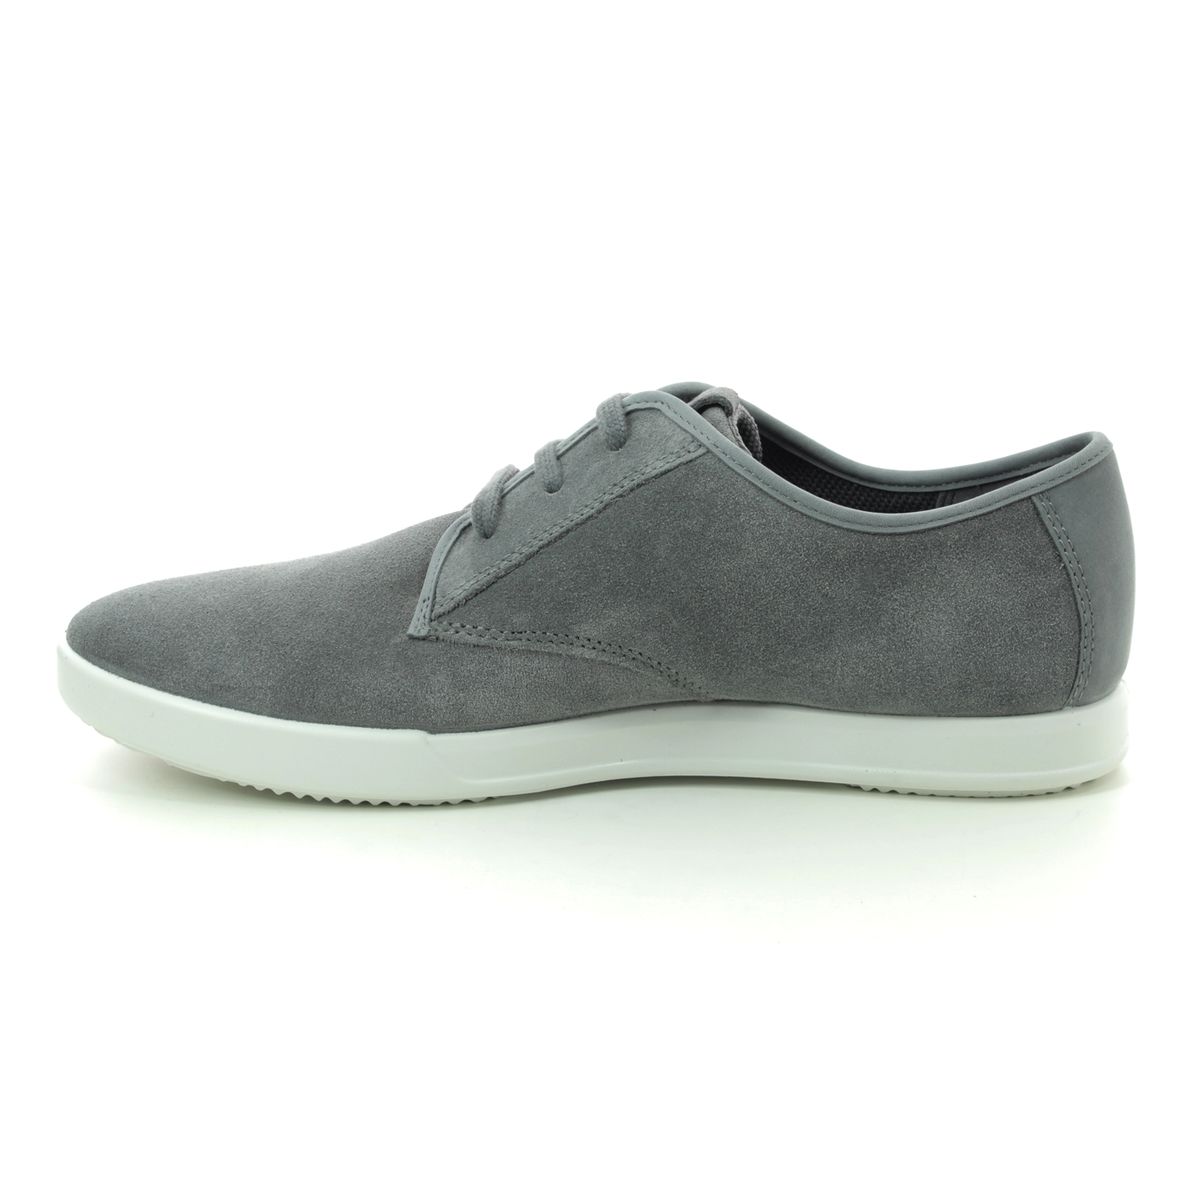 ECCO Collin 2.0 01 536324-52997 Grey-suede fashion shoes